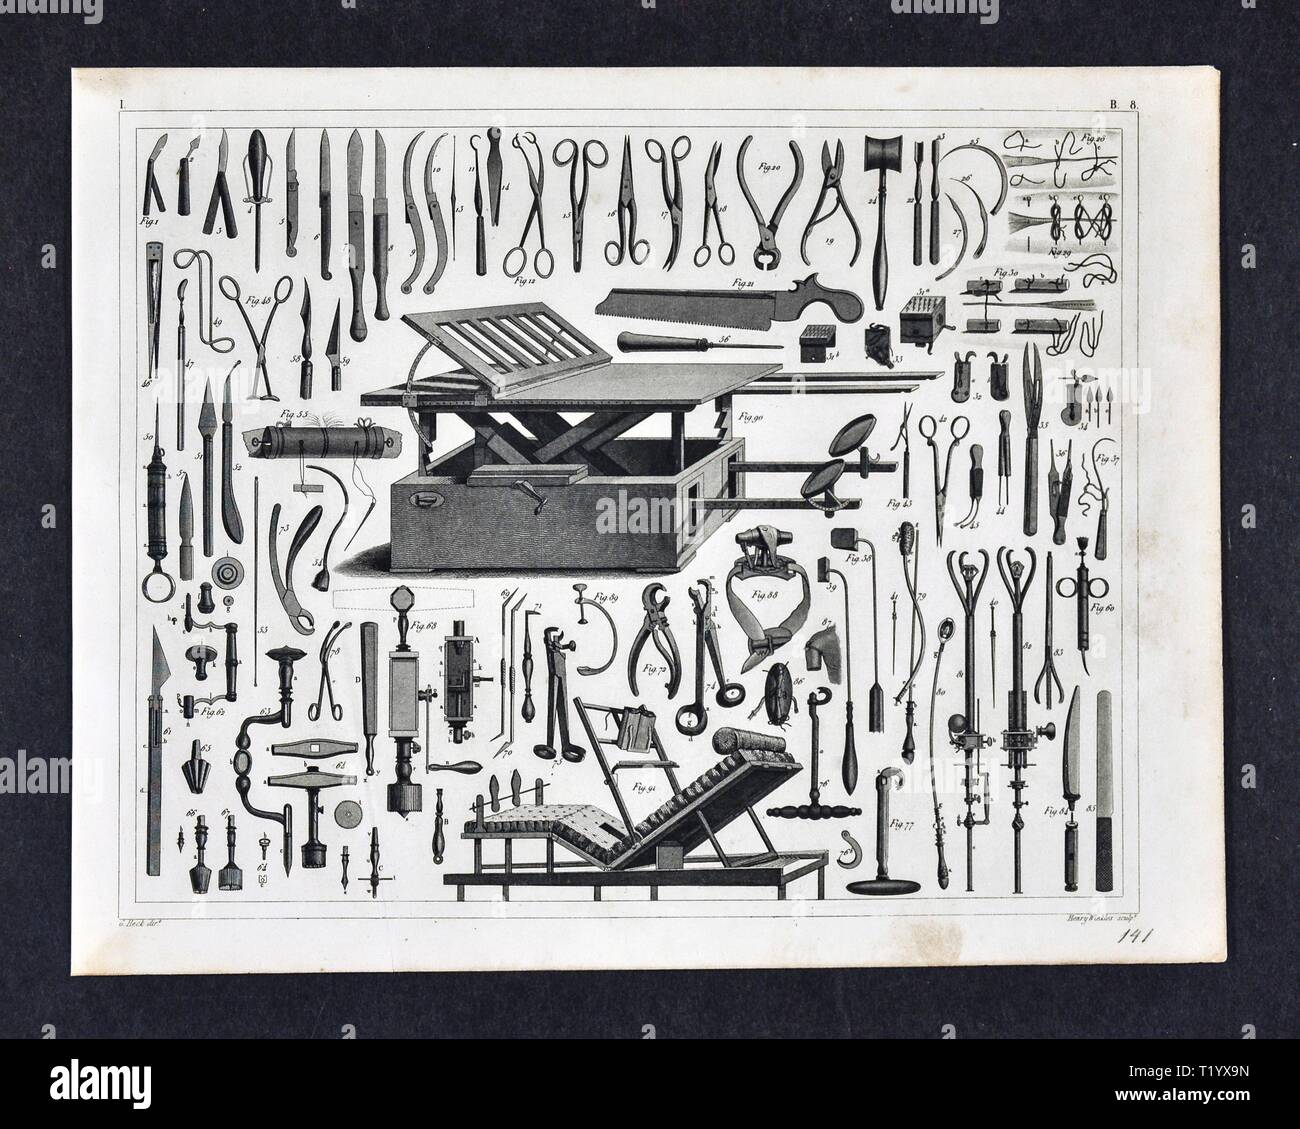 1849 Print Illustration médicale d'anciens outils chirurgicaux, y compris les pinces, ciseaux, scalpels, perceuses, seringues et autres instruments Banque D'Images